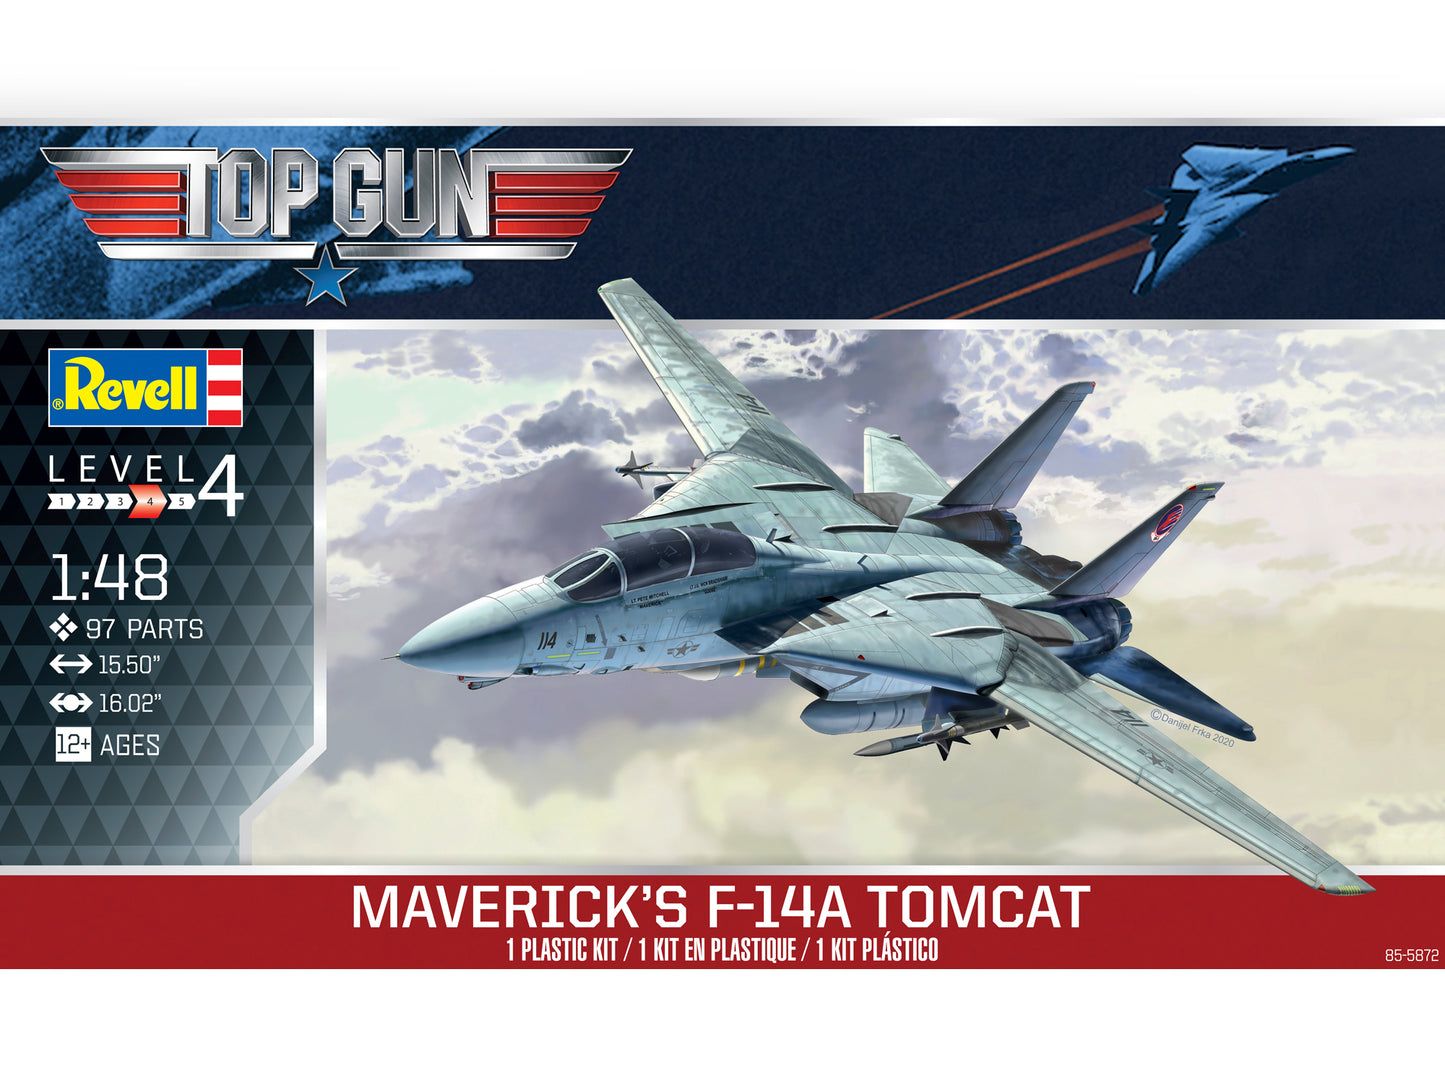 Maverick's F-14 Tomcat: 1/48 Model Kit